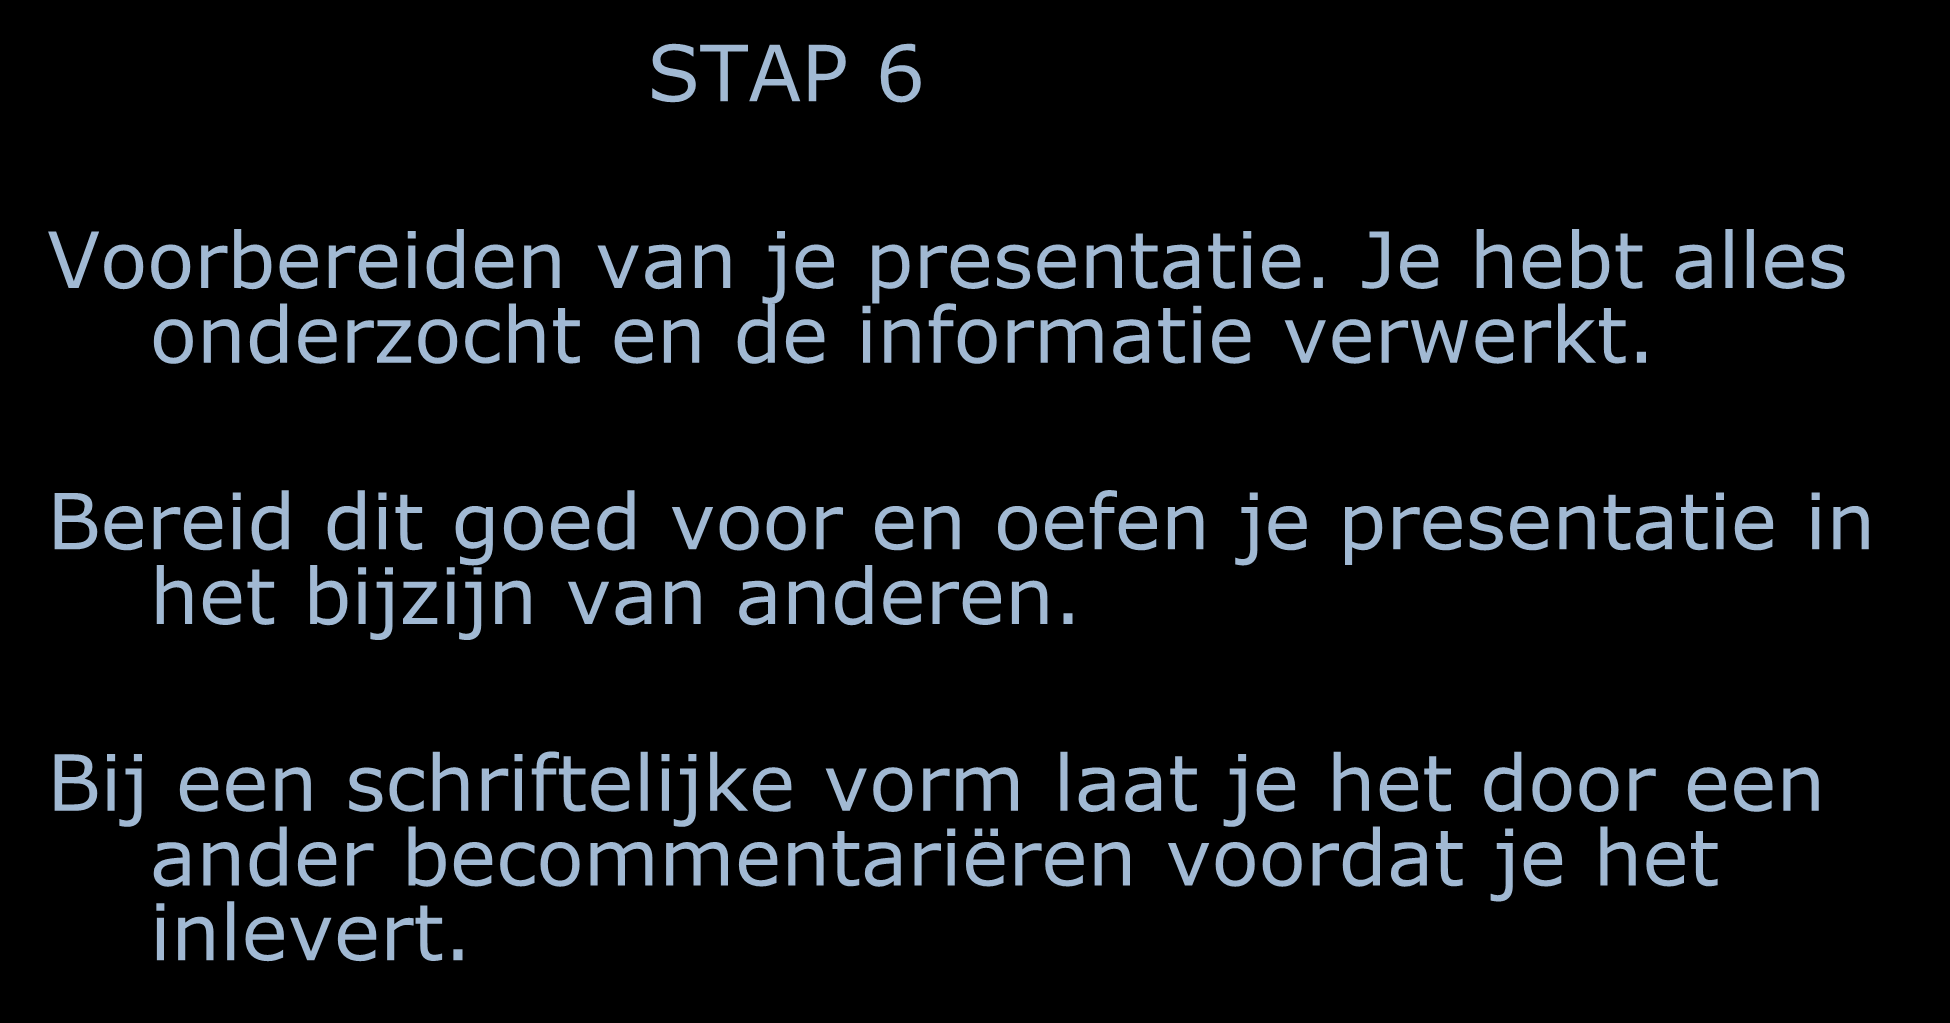 STAP 6 Voorbereiden van je presentatie. Je hebt alles onderzocht en de informatie verwerkt.